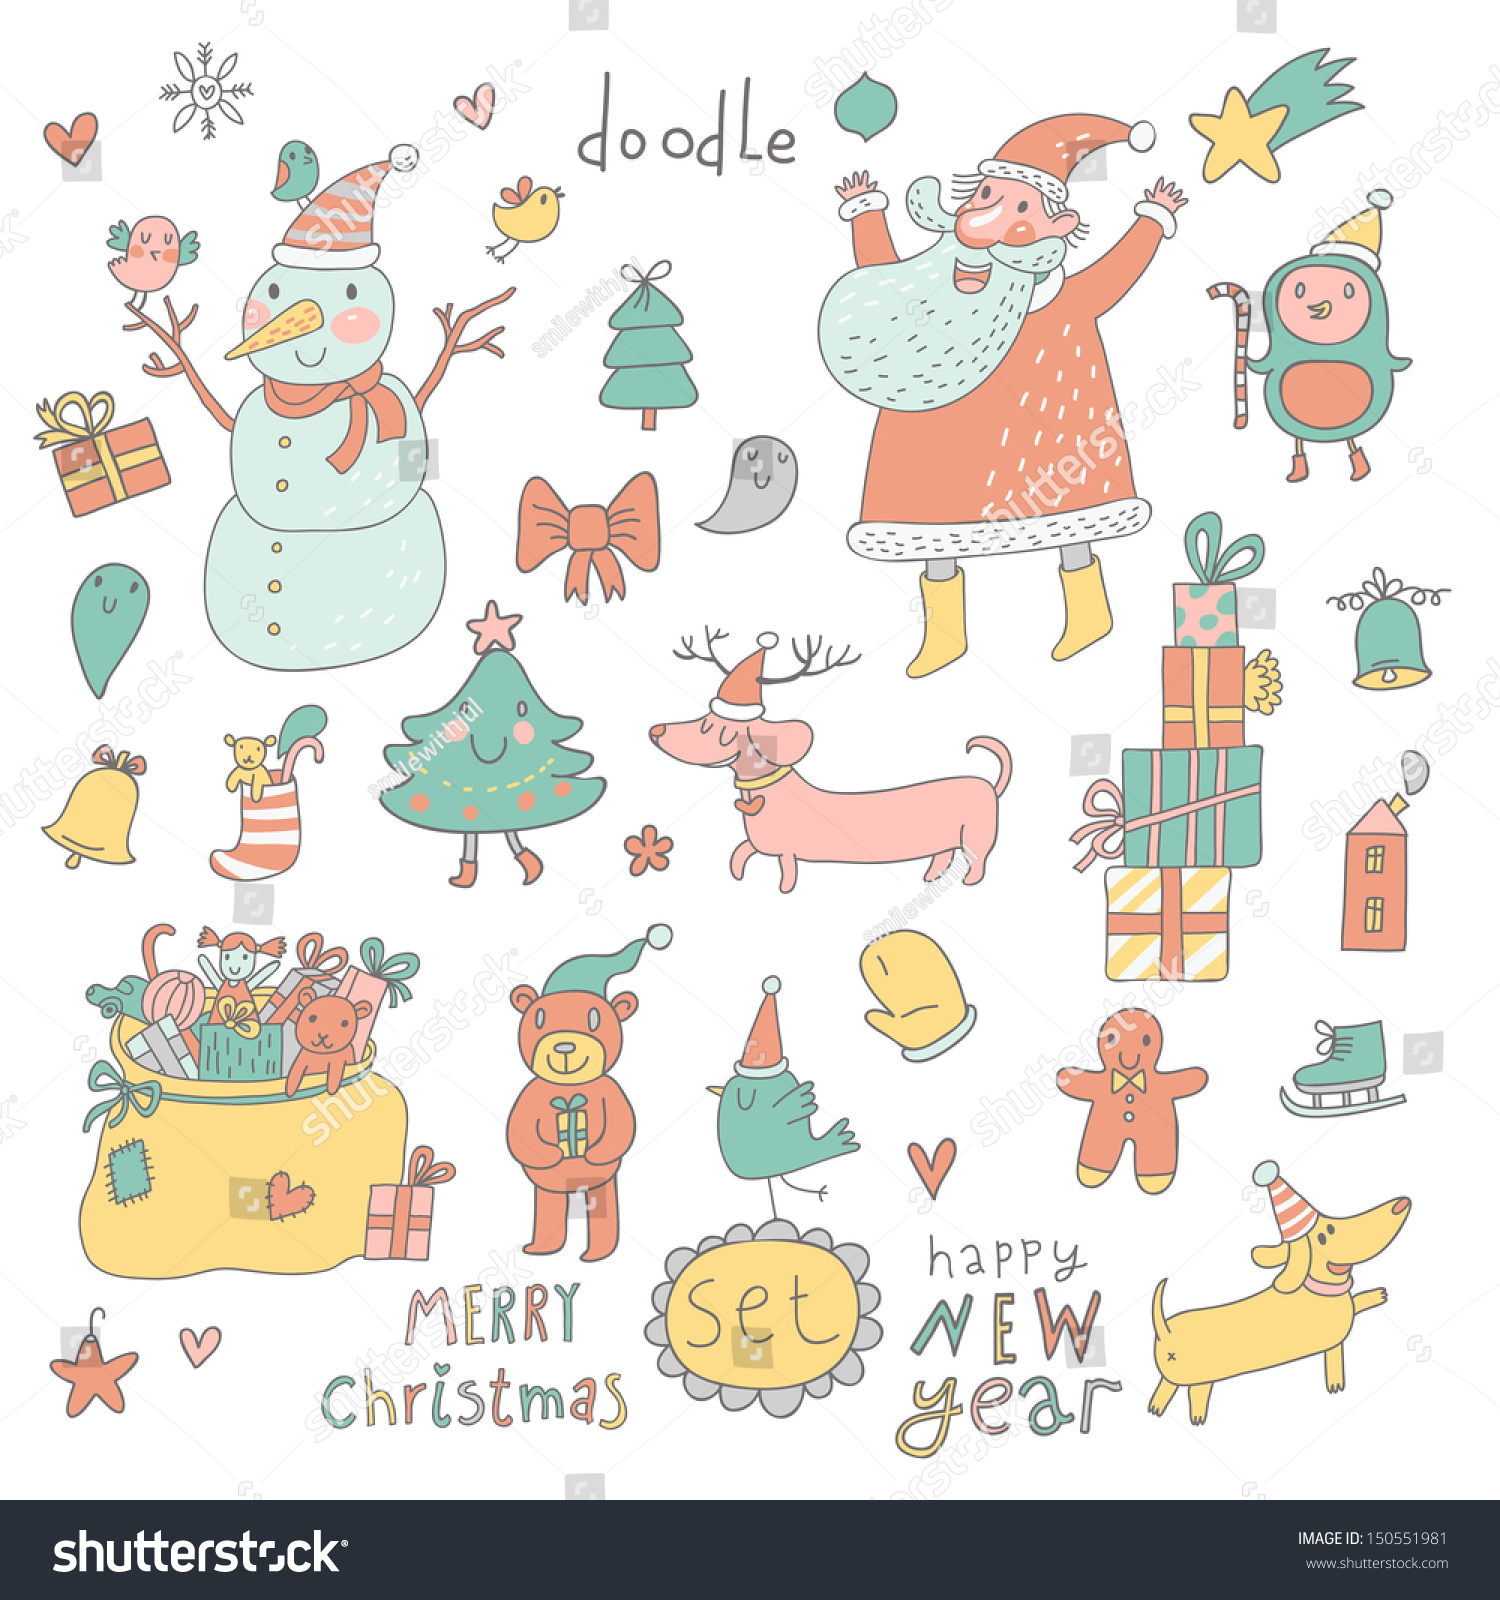 Cartoon New Year and Christmas set in vector Cute Santa Claus Snowman fir